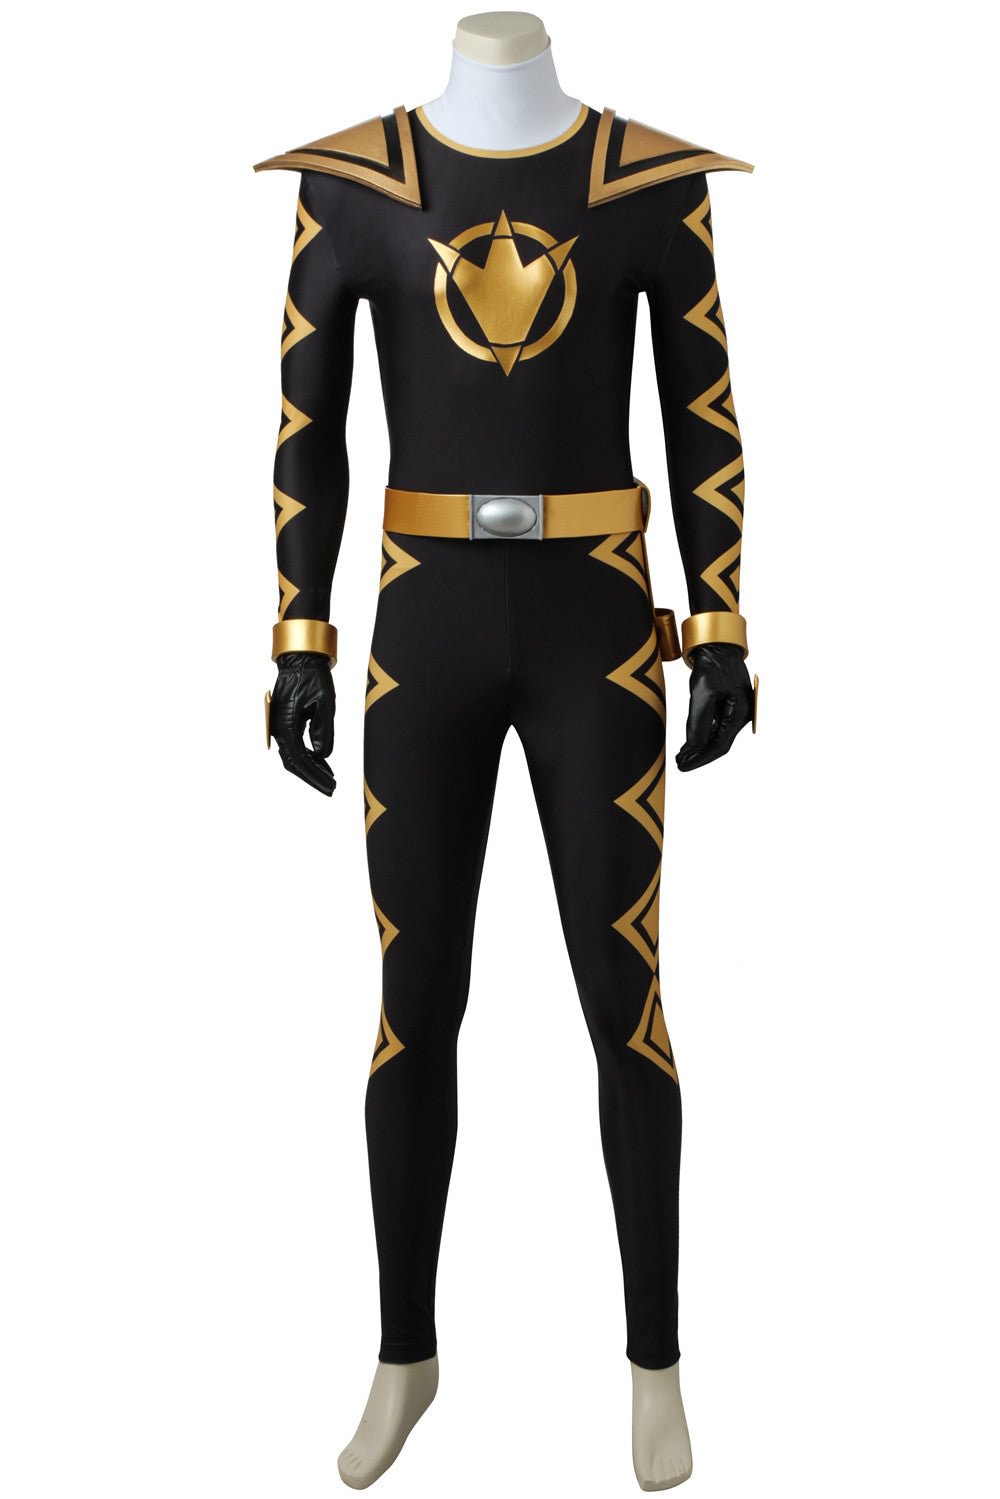 Power Rangers Dino Thunder Black Ranger Tommy Oliver Cosplay Costume